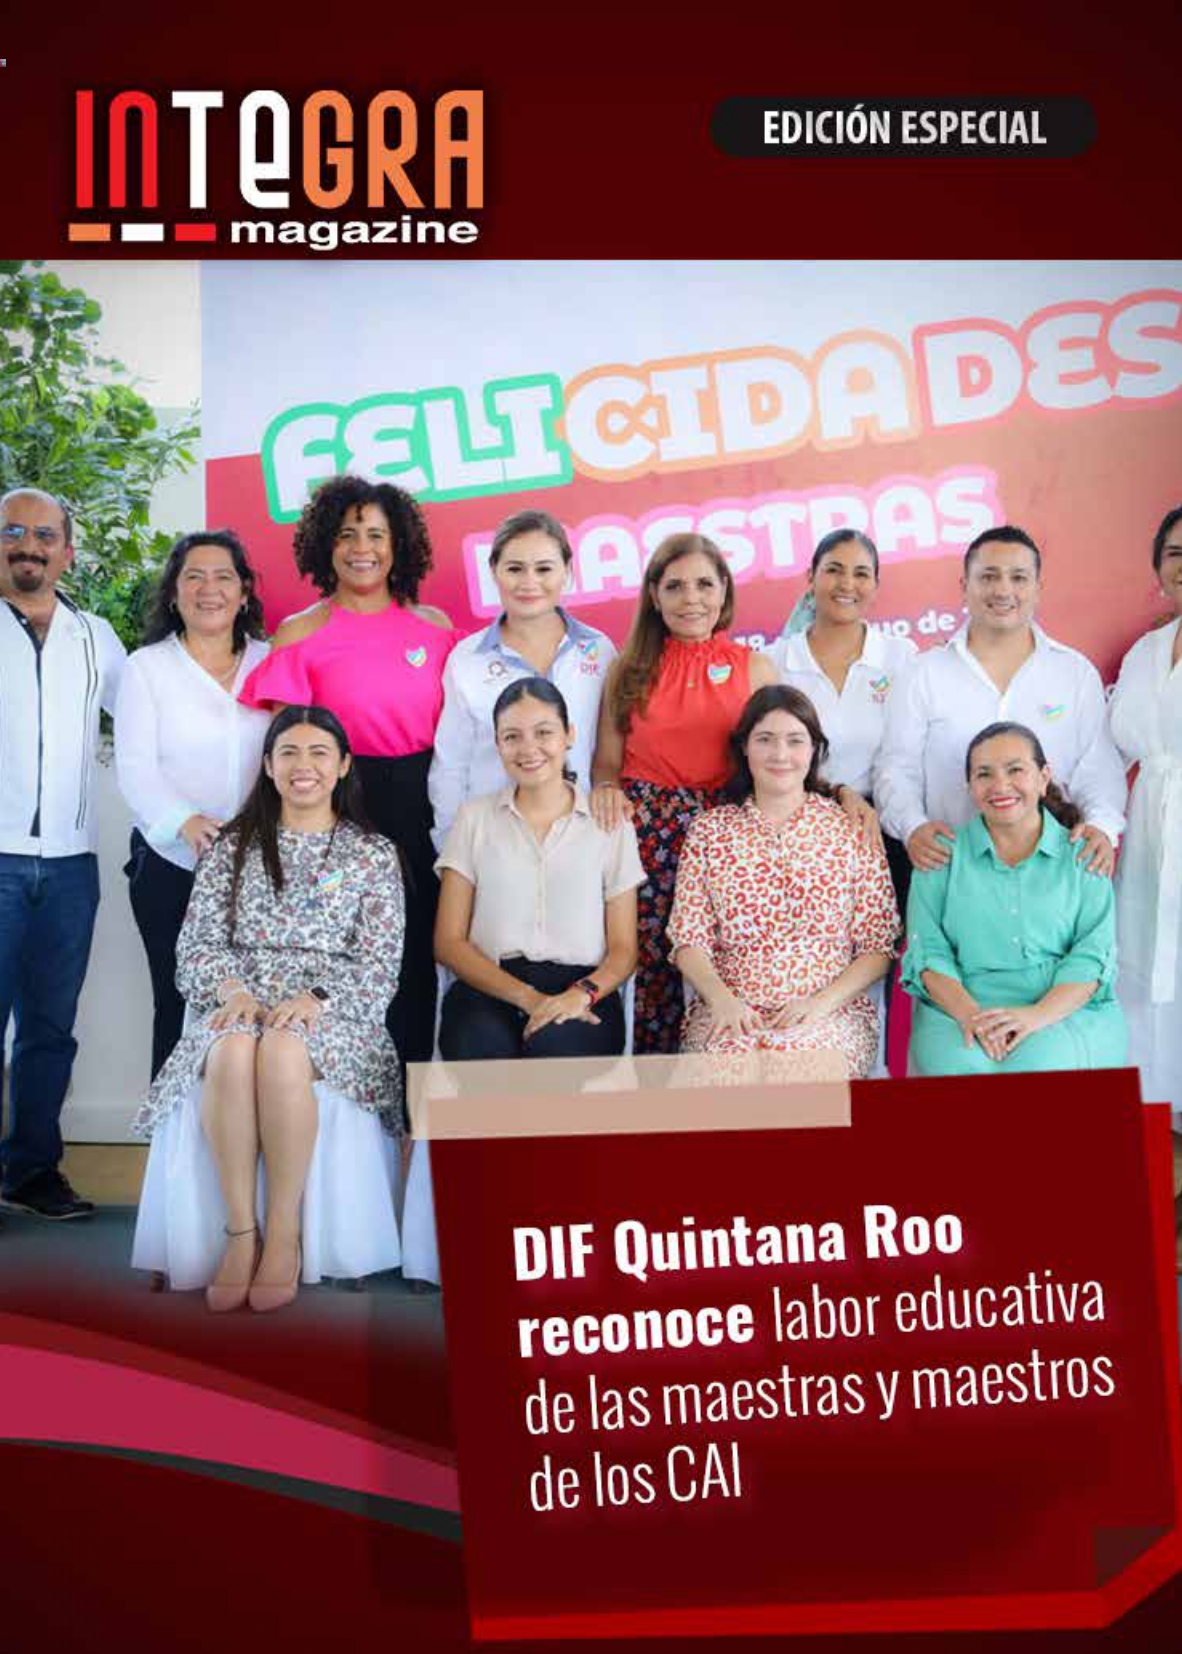 Edición especial DIF Quintana Roo